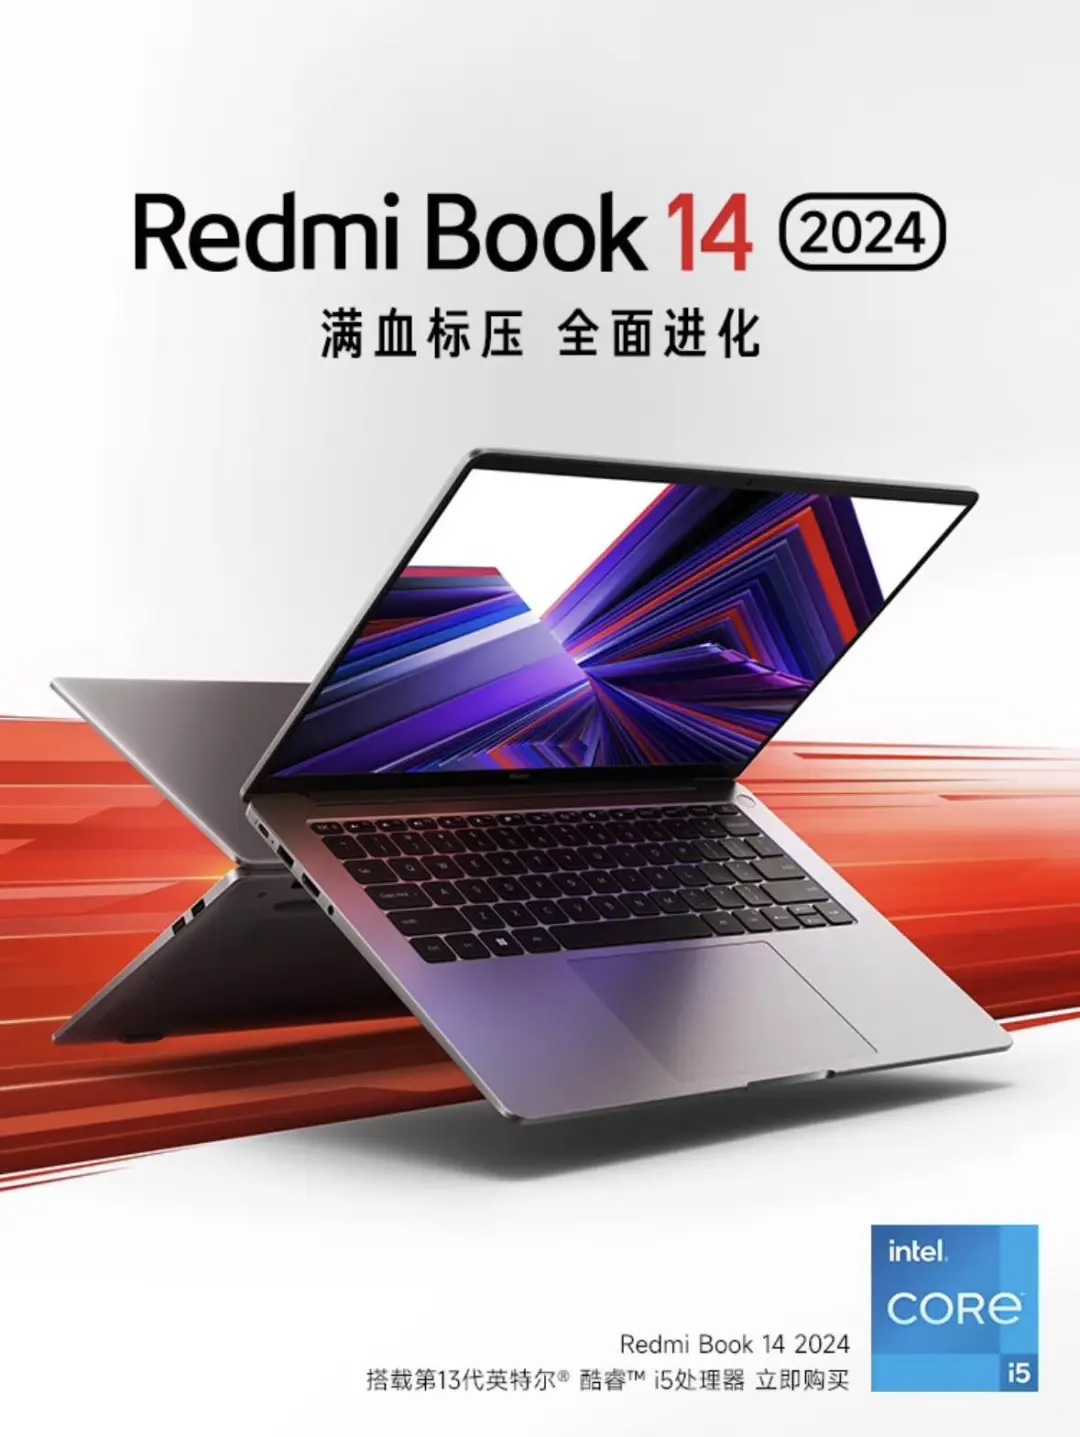 Назван поставщик эксклюзивных 2,8K-экранов для RedmiBook 14